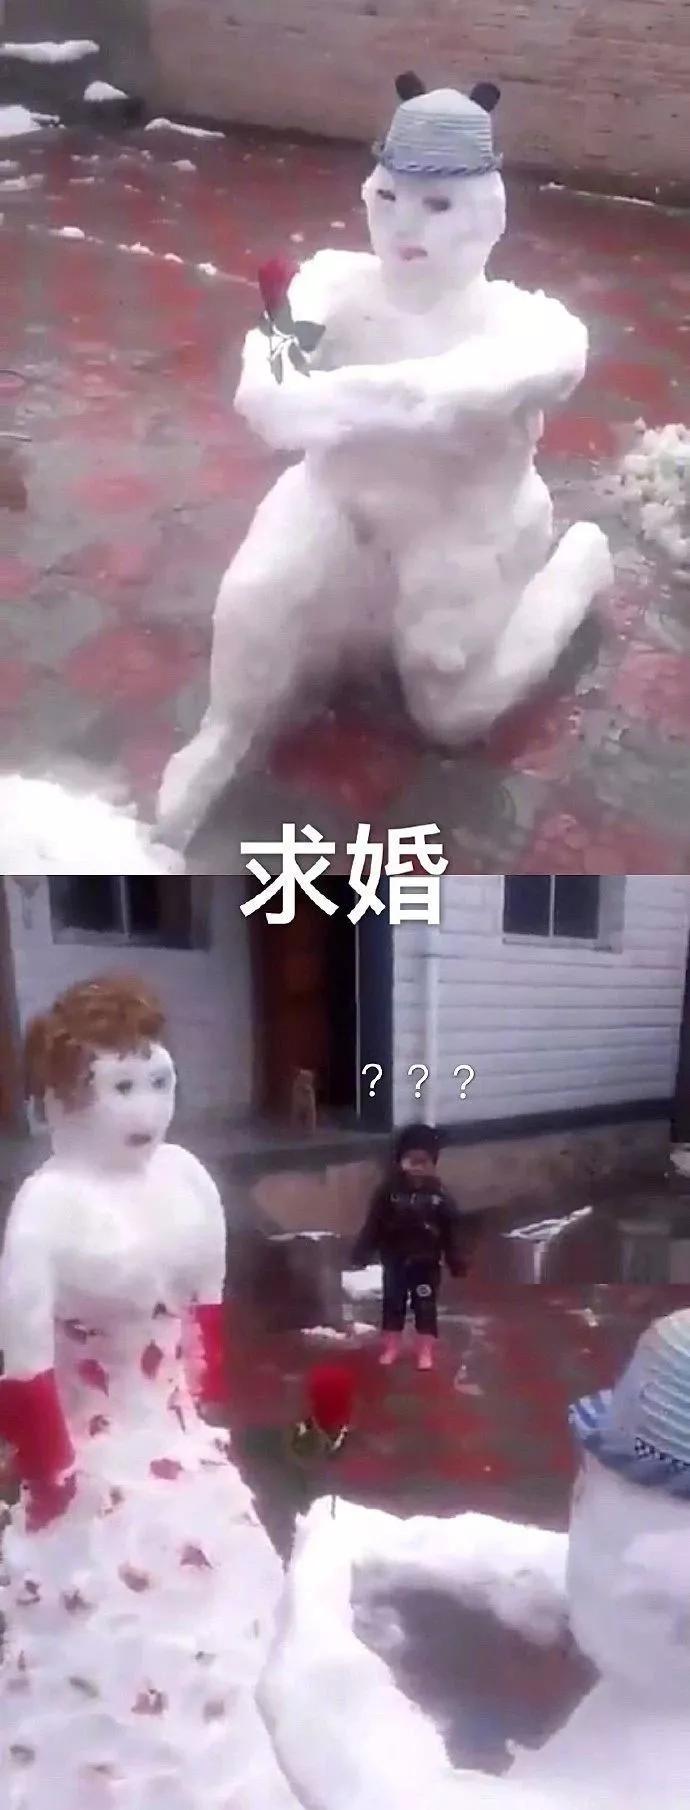 医学生用雪人堆出来一个断臂维纳斯雕像，艺术感拉满